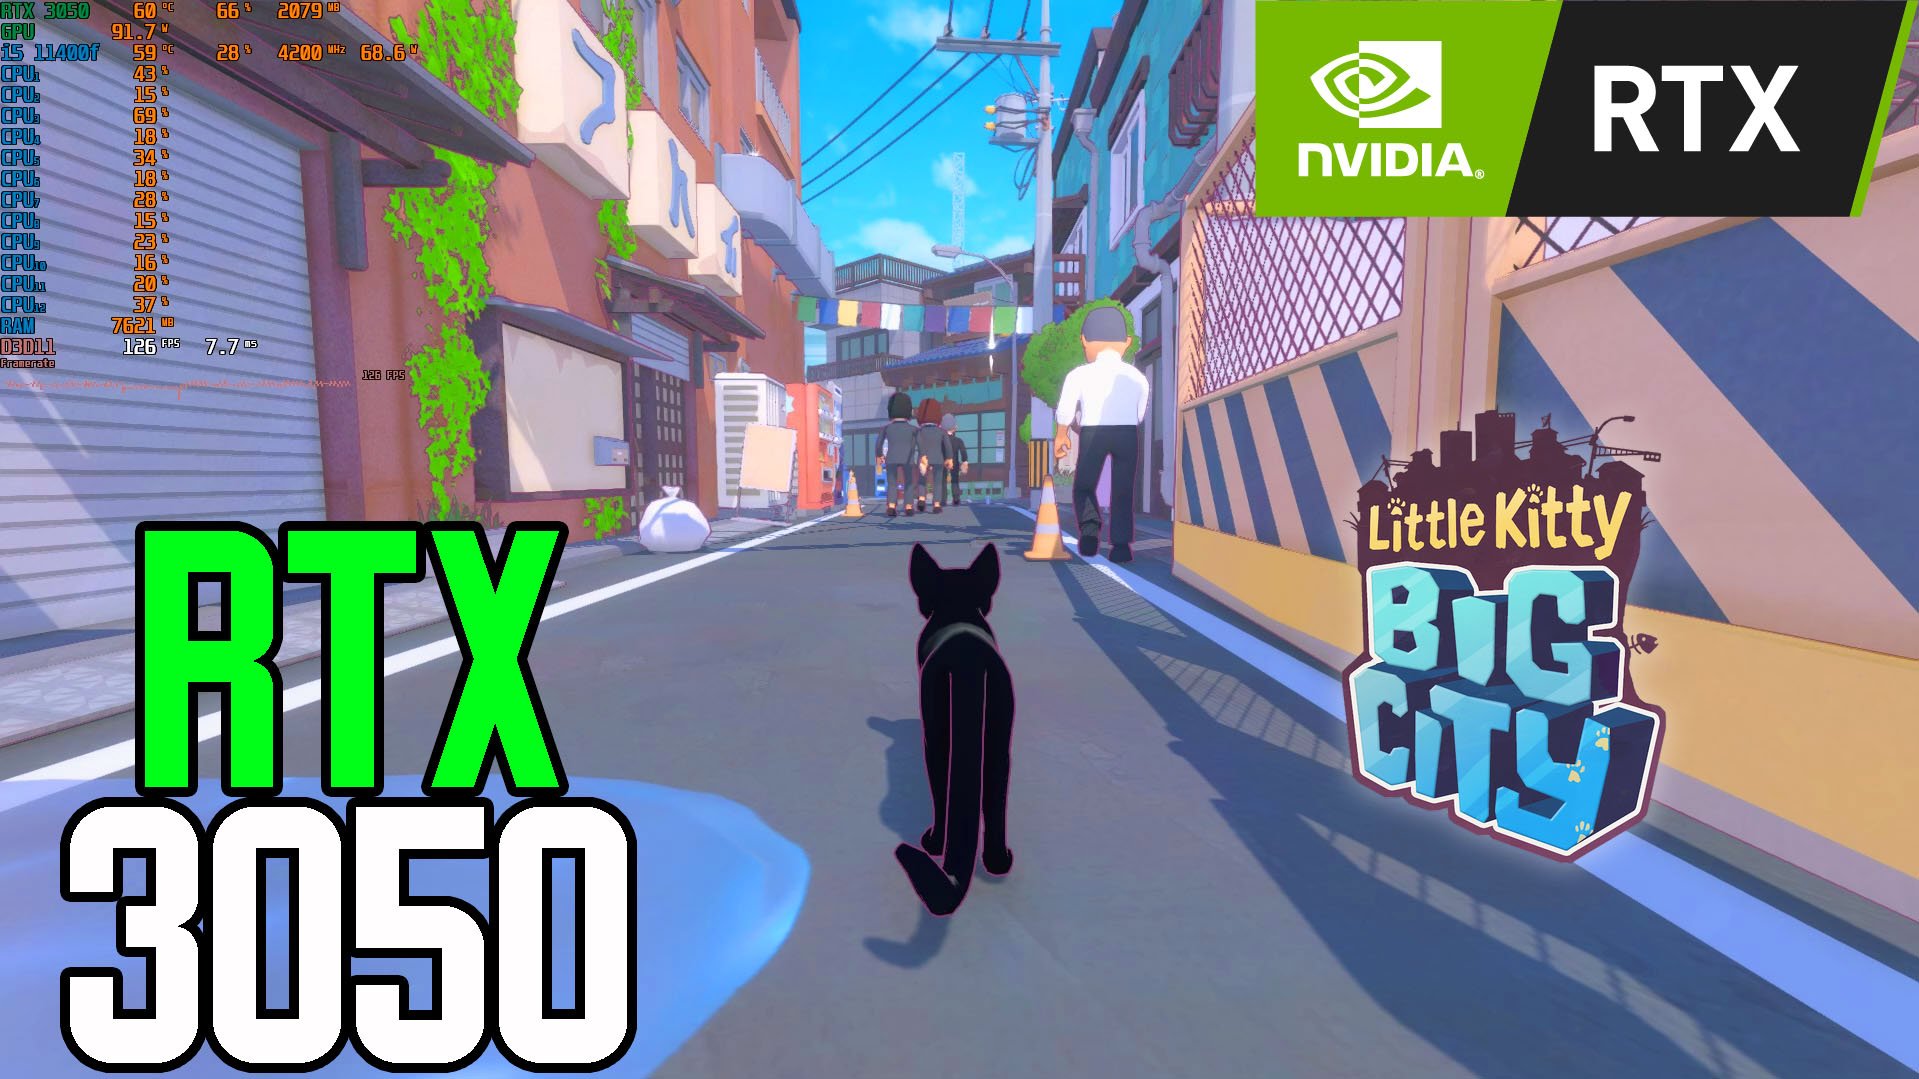 RTX 3050 8gb | Little Kitty, Big City | i5 11400f